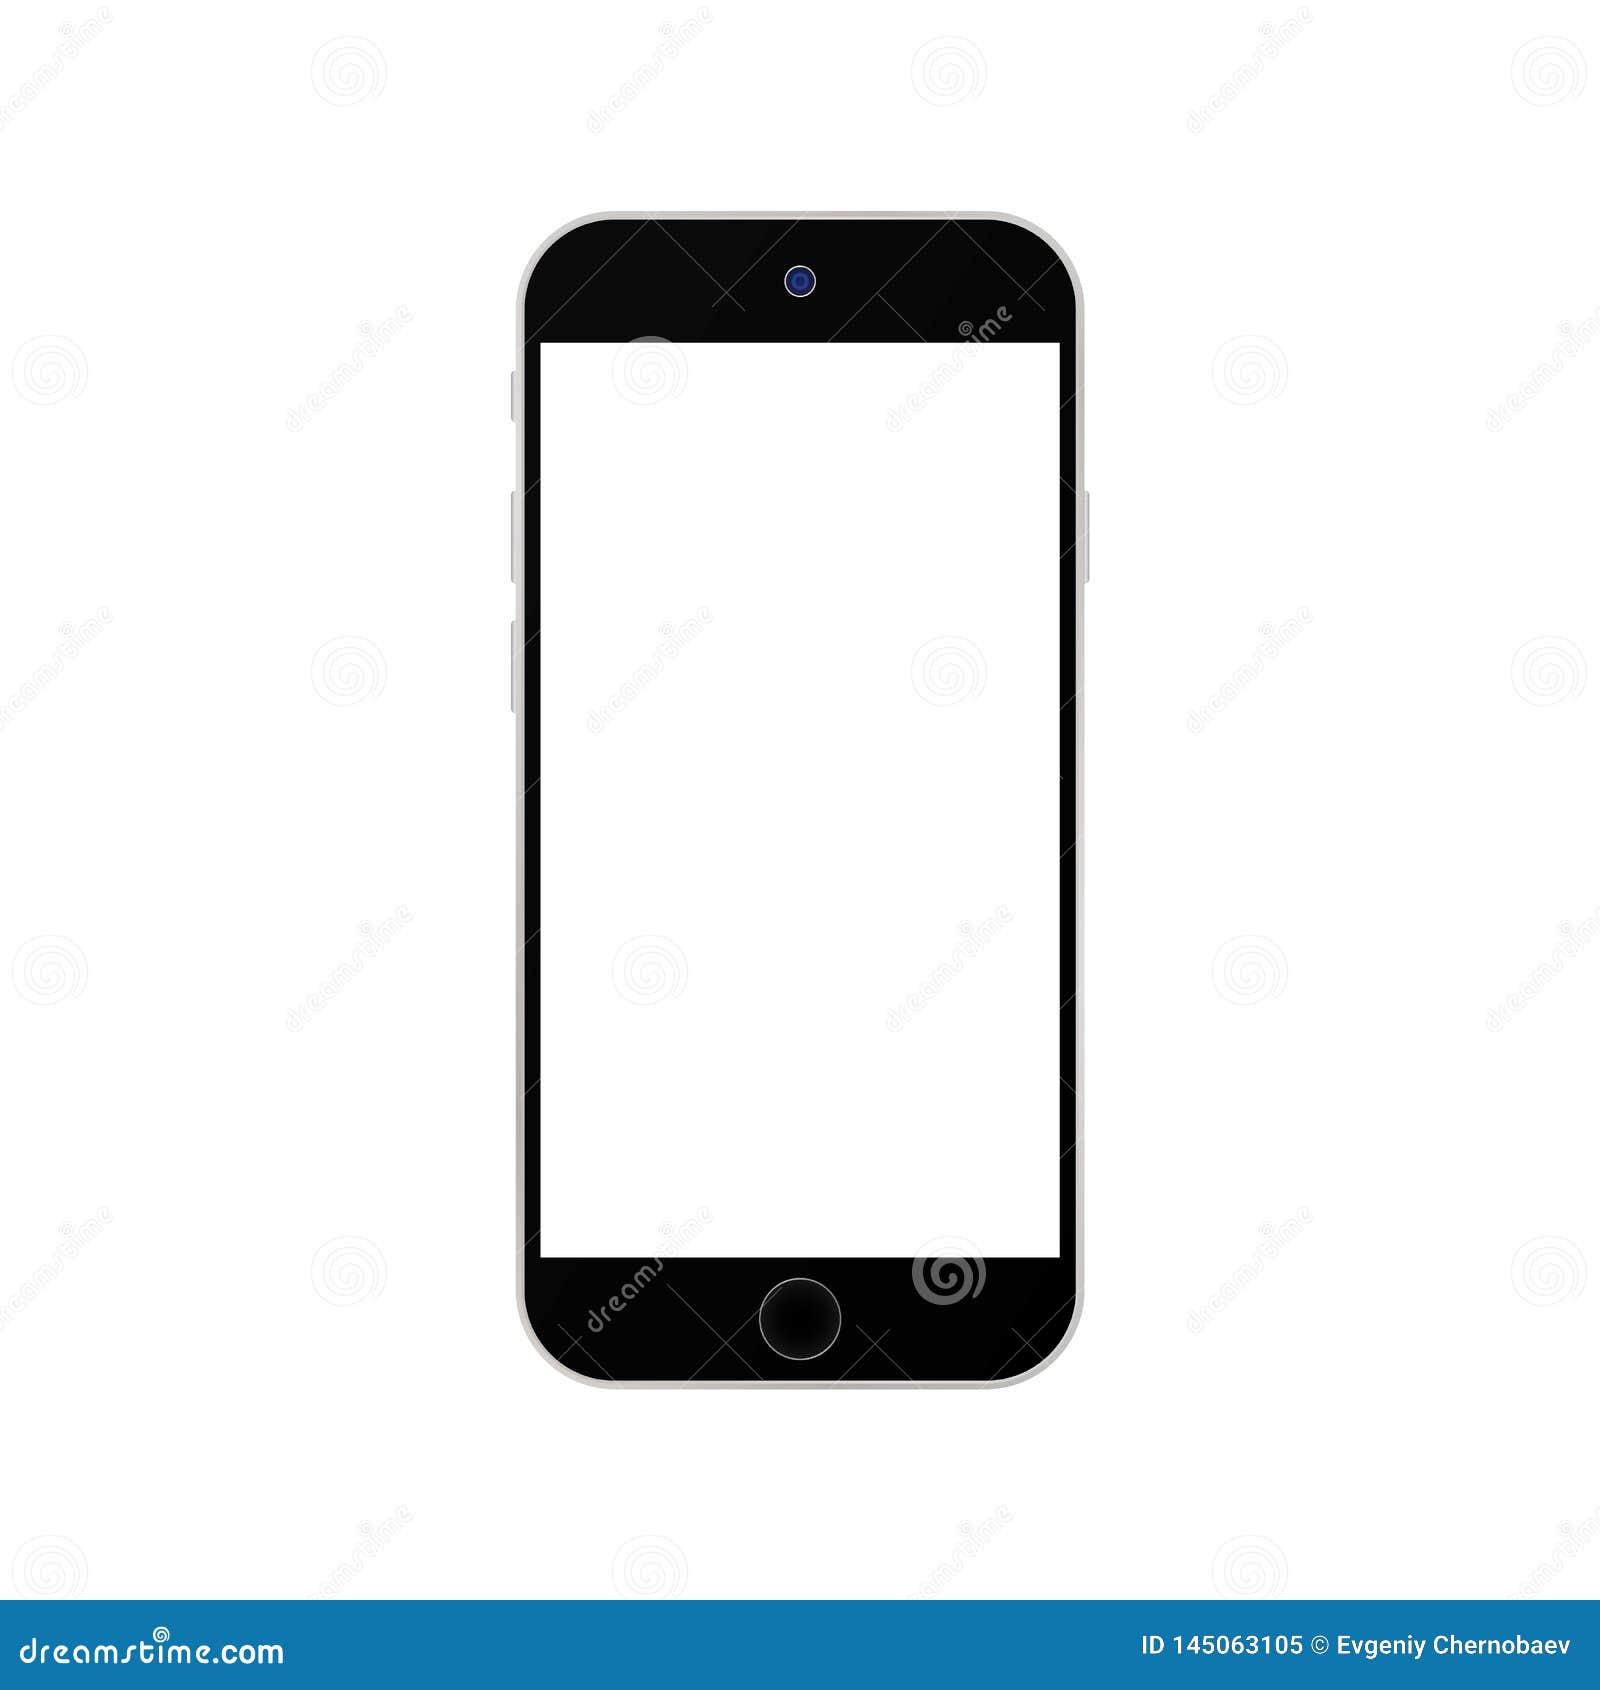 Điện thoại Iphone màu đen với màn hình trắng trên nền trắng là một trong những bức ảnh tuyệt đẹp và sáng tạo nhất khi chụp sản phẩm. Sự kết hợp giữa màu đen và trắng mang đến cảm giác thanh lịch và sang trọng cho sản phẩm. Hãy xem ngay hình ảnh điện thoại Iphone màu đen trên nền trắng để cảm nhận sự độc đáo nhé.